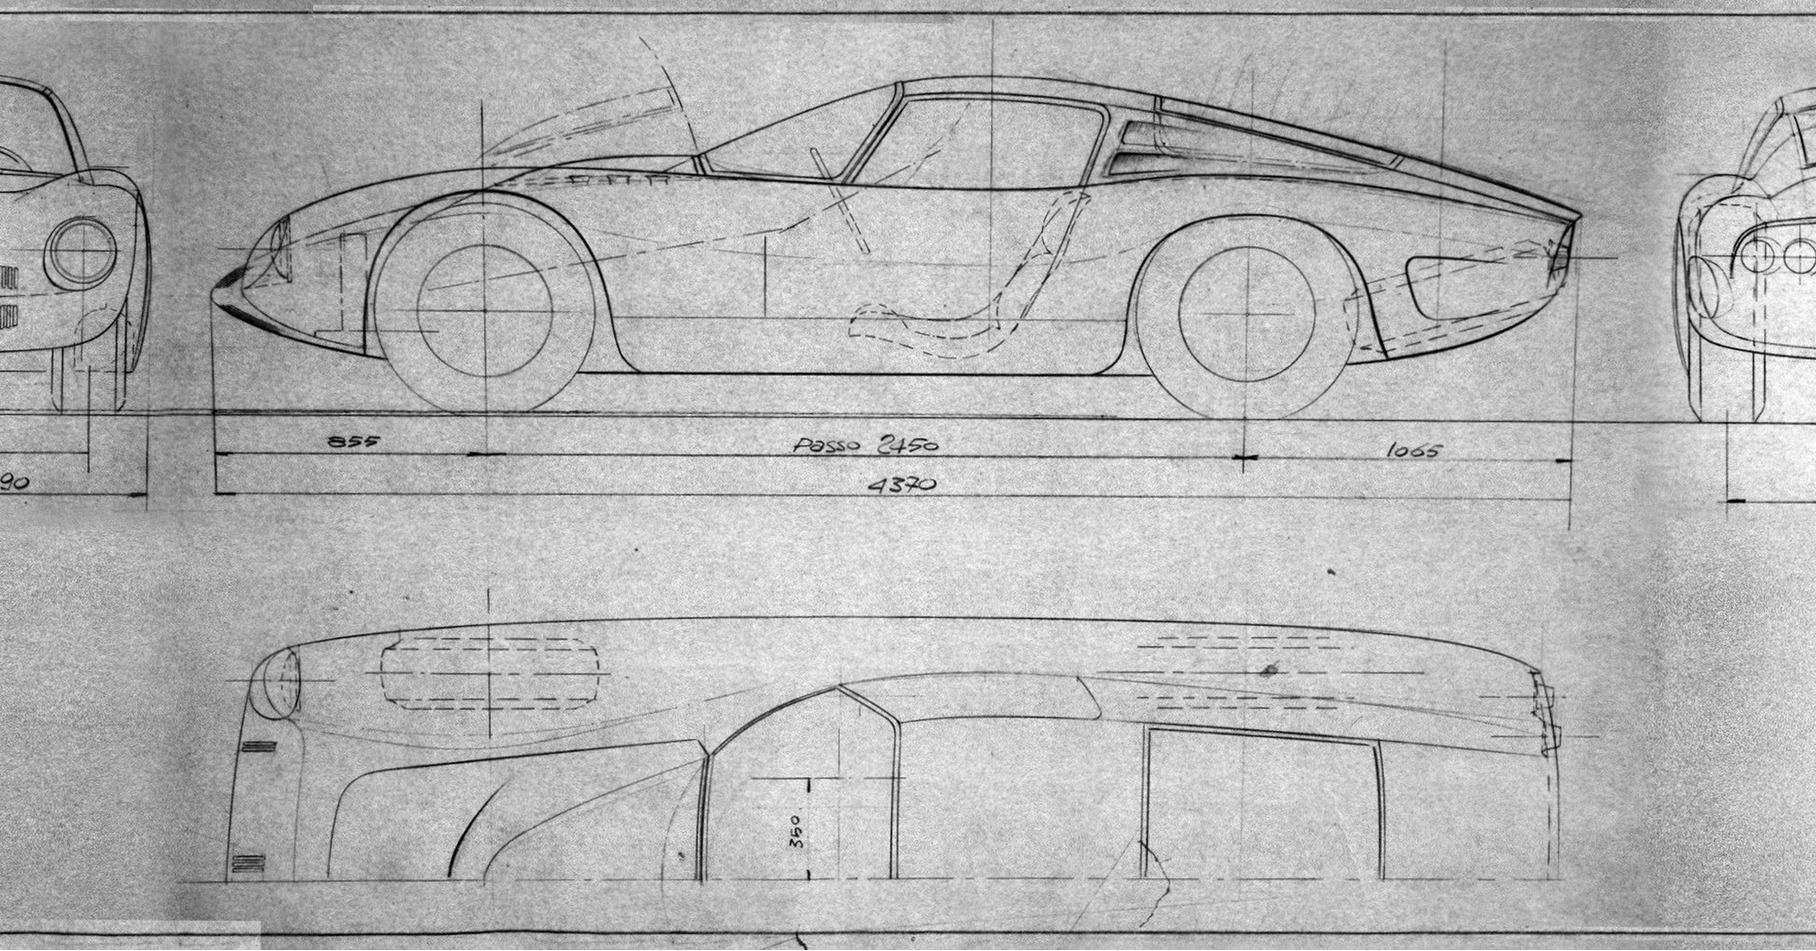 Эскиз кузова Iso Grifo A3/С: на чертеже, выполненном Джорджетто Джуджаро, видно два предложенных варианта заднего стекла — плоское и выпуклое. Первый вариант использовался на самых ранних машинах, потом перешли на более крупное окно